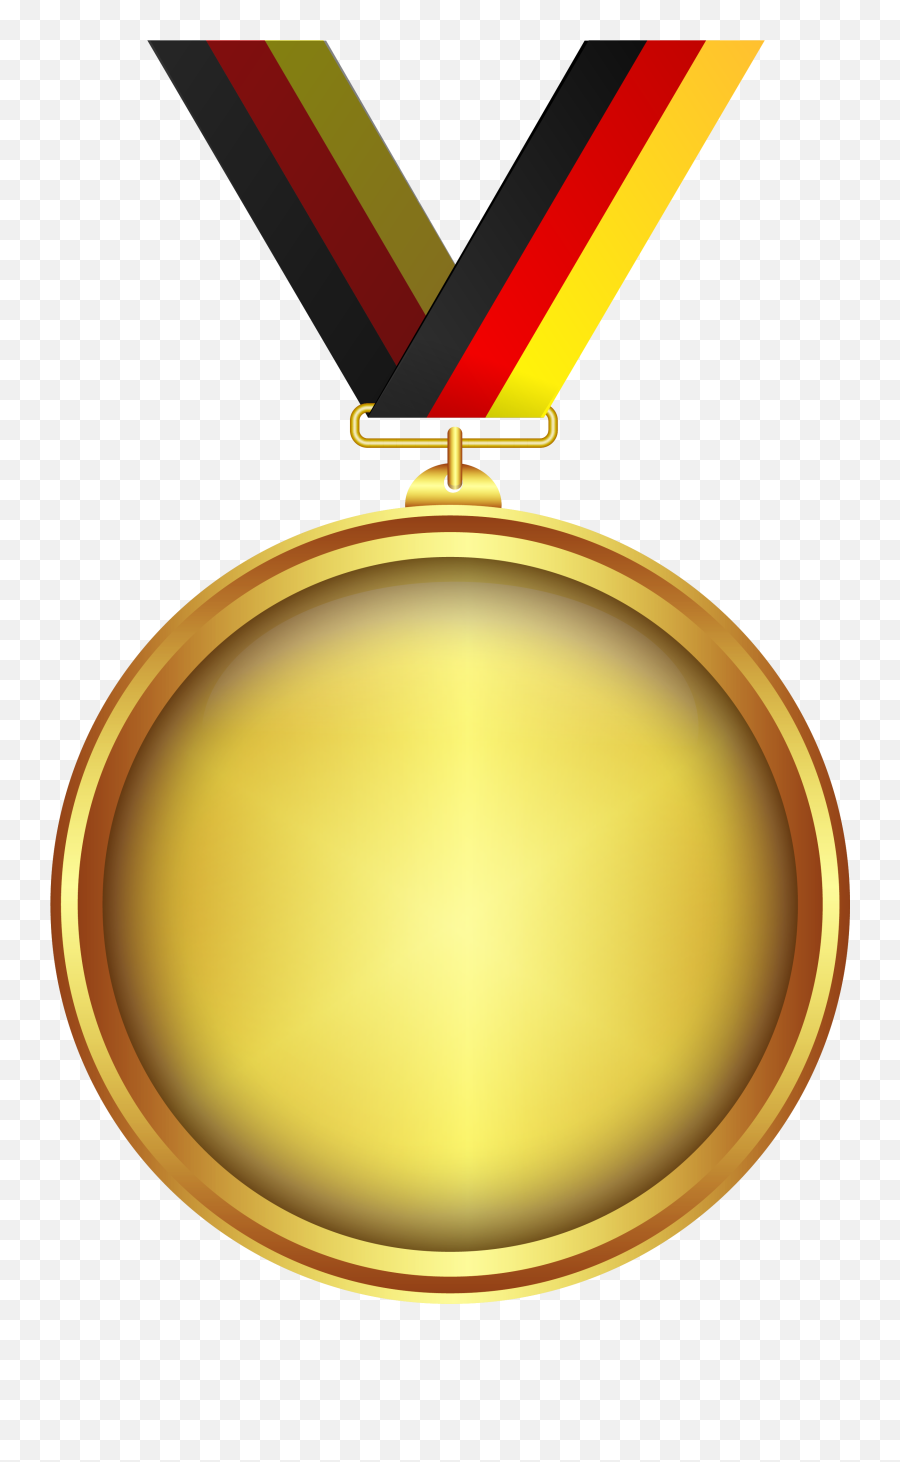 Free Medal Transparent Background - Medal Design Png Emoji,Gold Medal Emoji